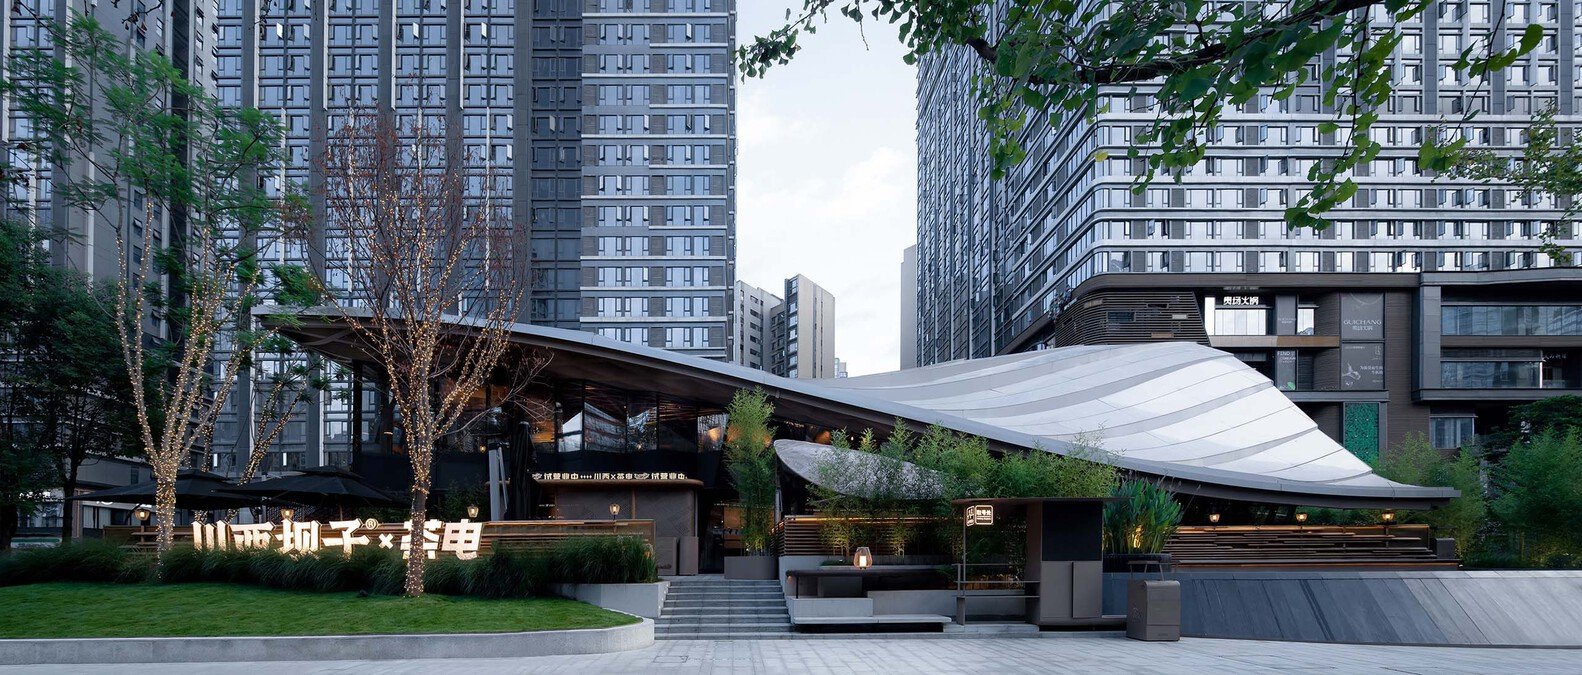 Organiška medinė stogo architektūra, unikalus restorano projektas